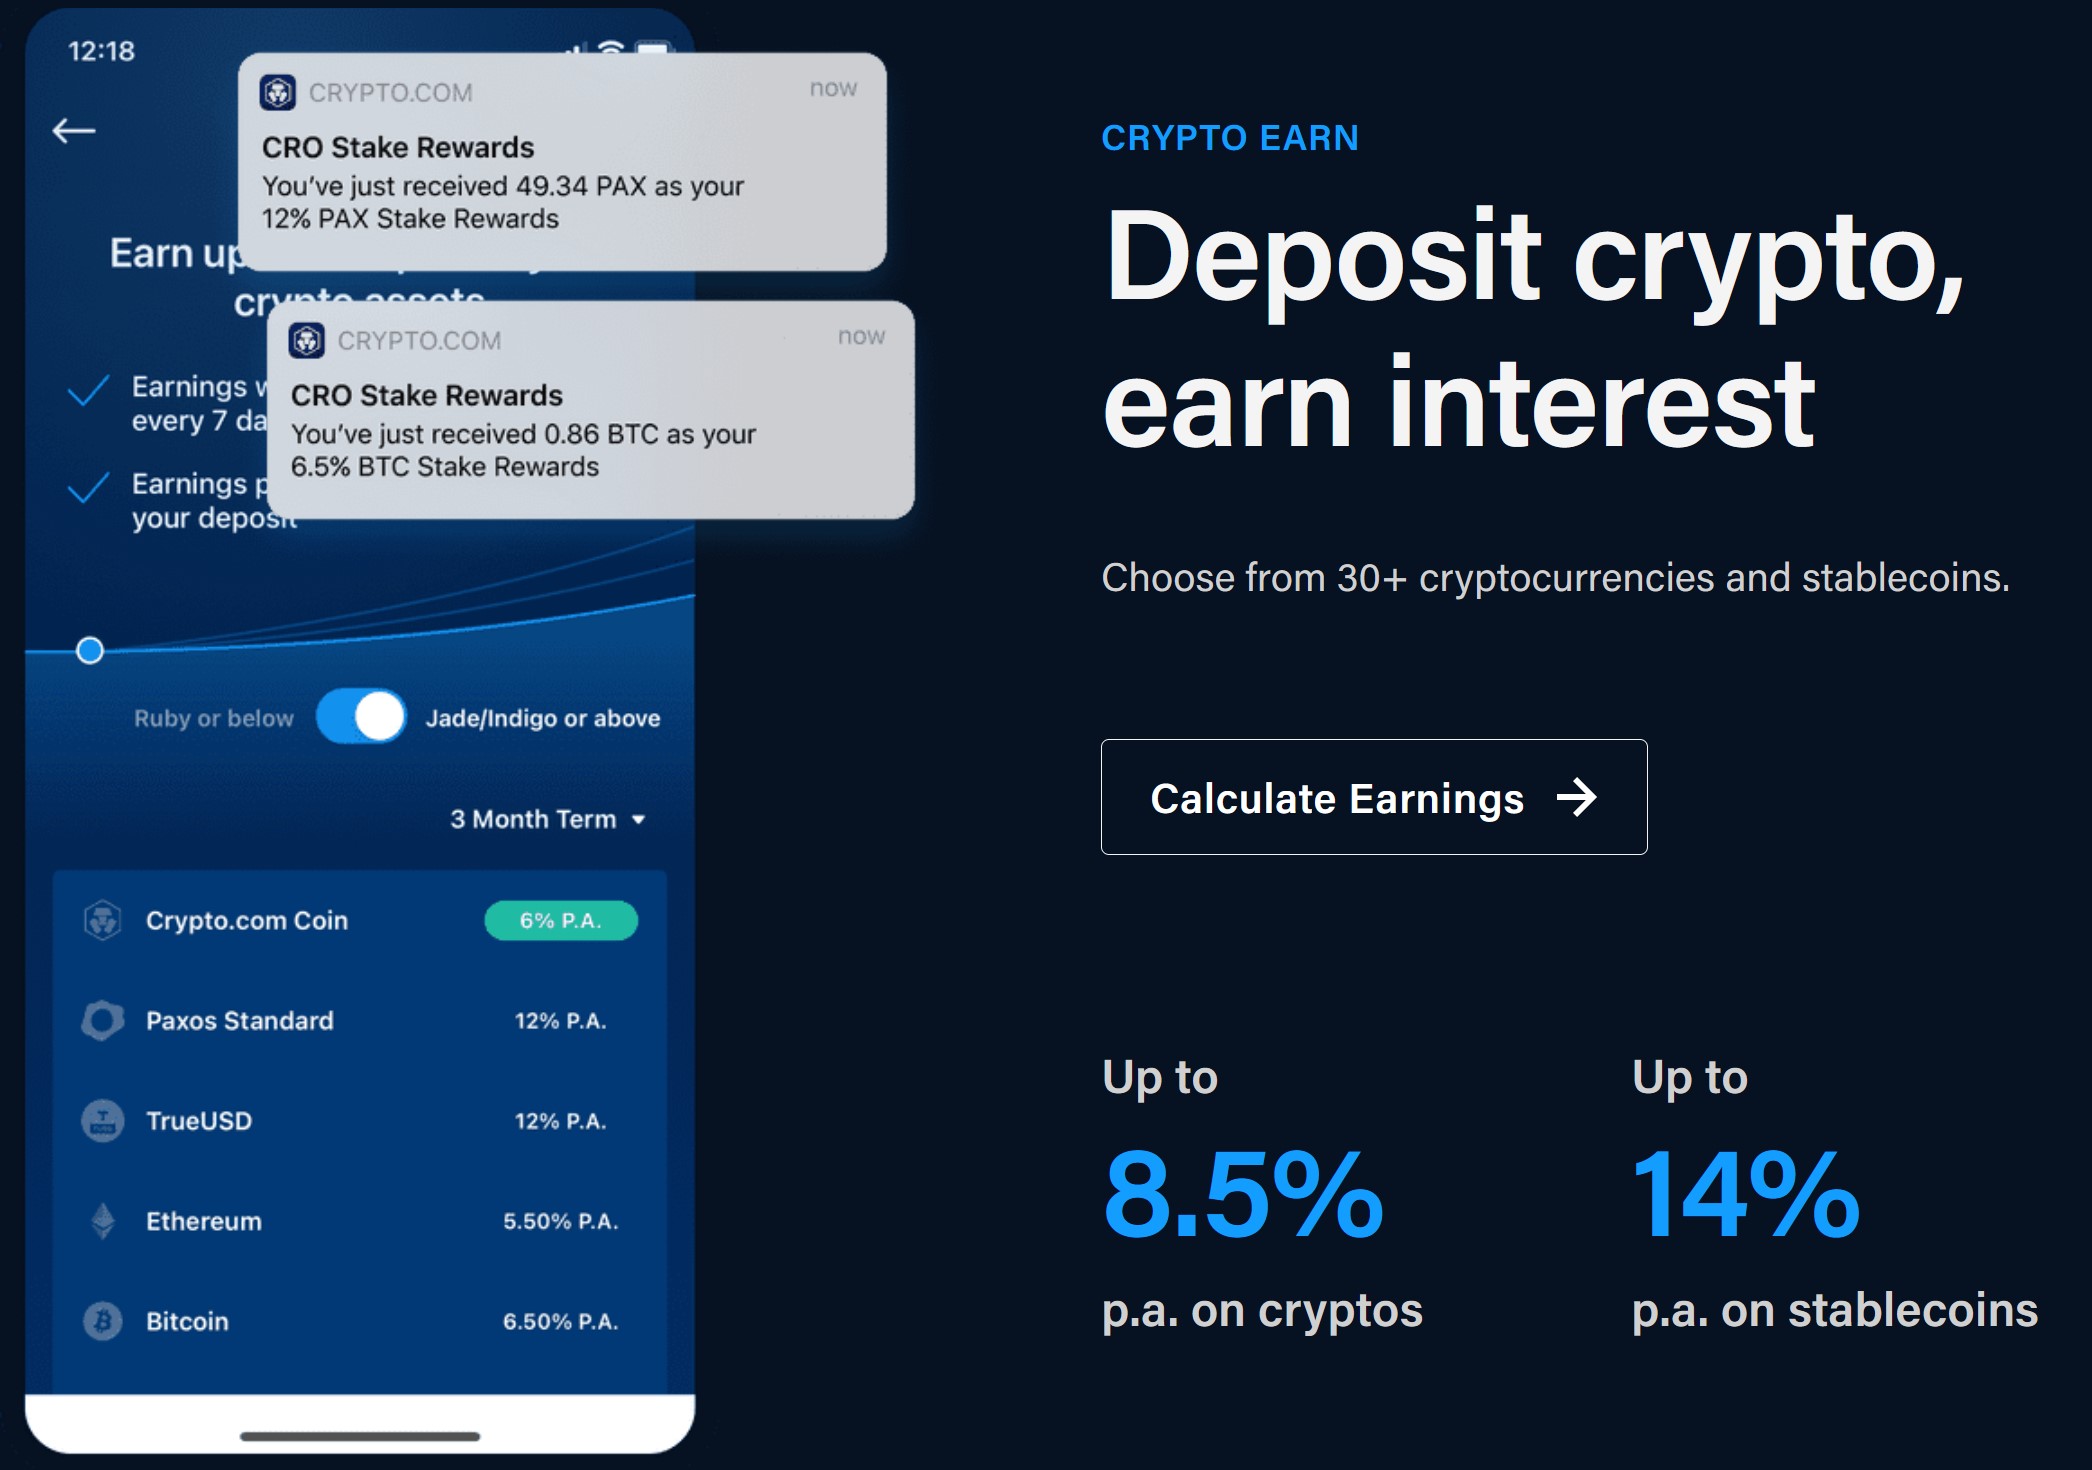 Crypto.com promotion